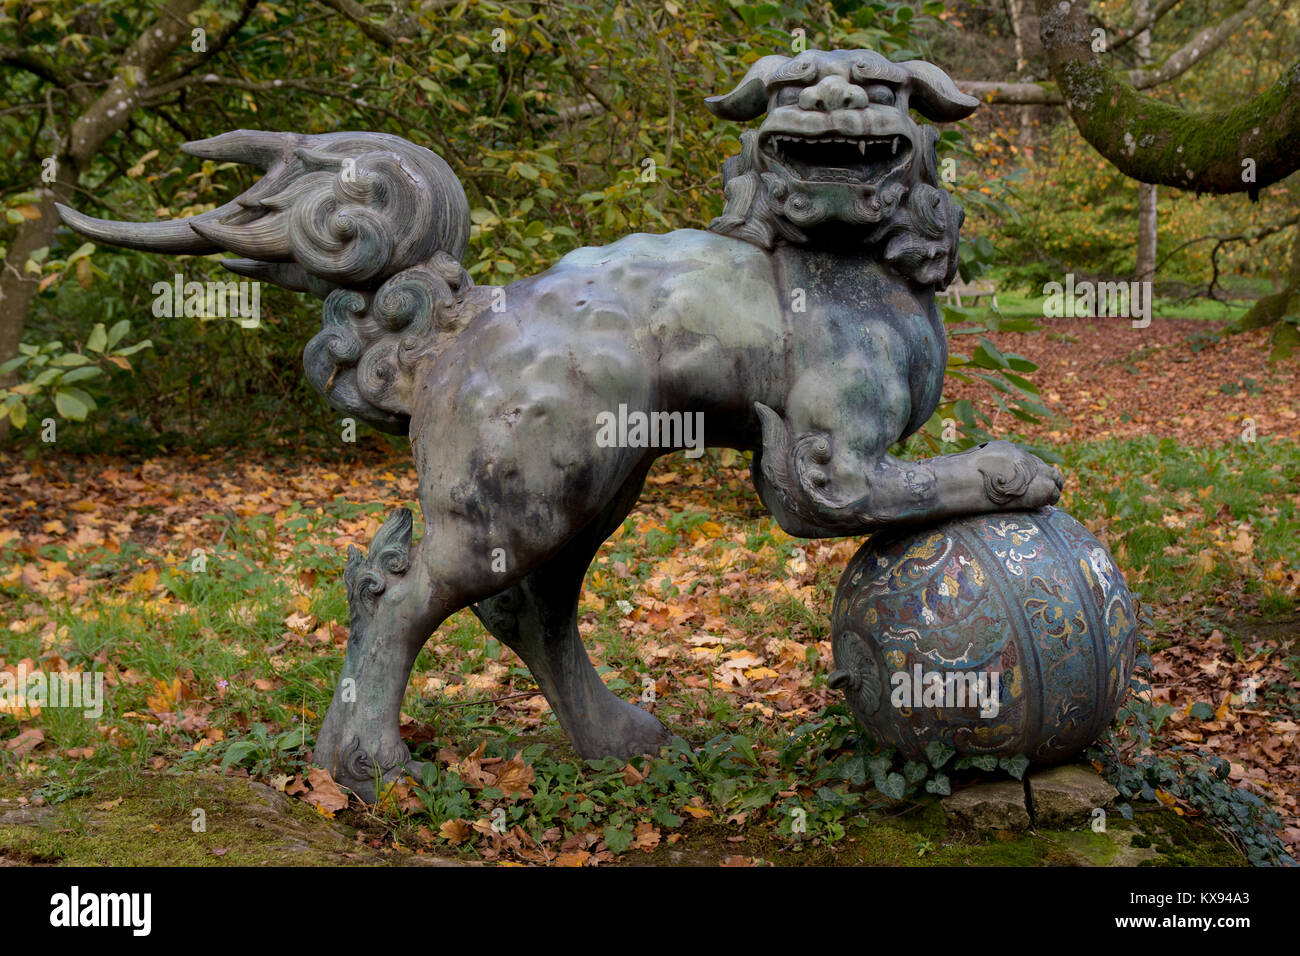 Statue de bronze chien Foo, Batsford Arboretum, Moreton-in-Marsh, Gloustershire. 29 octobre 2017 Banque D'Images